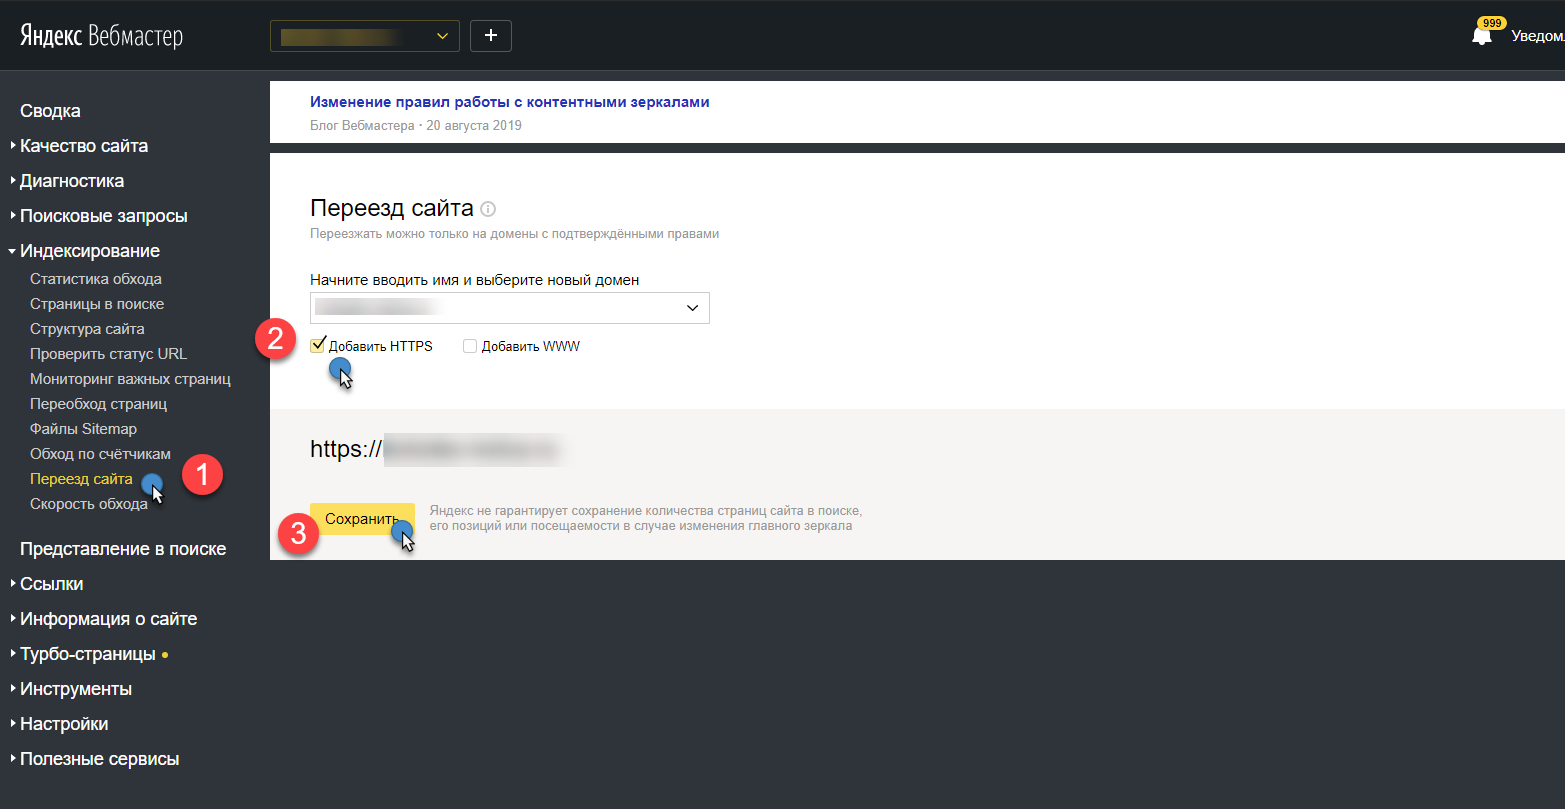 Завершение переезда сайта на HTTPS - настройка Вебмастера - скриншот